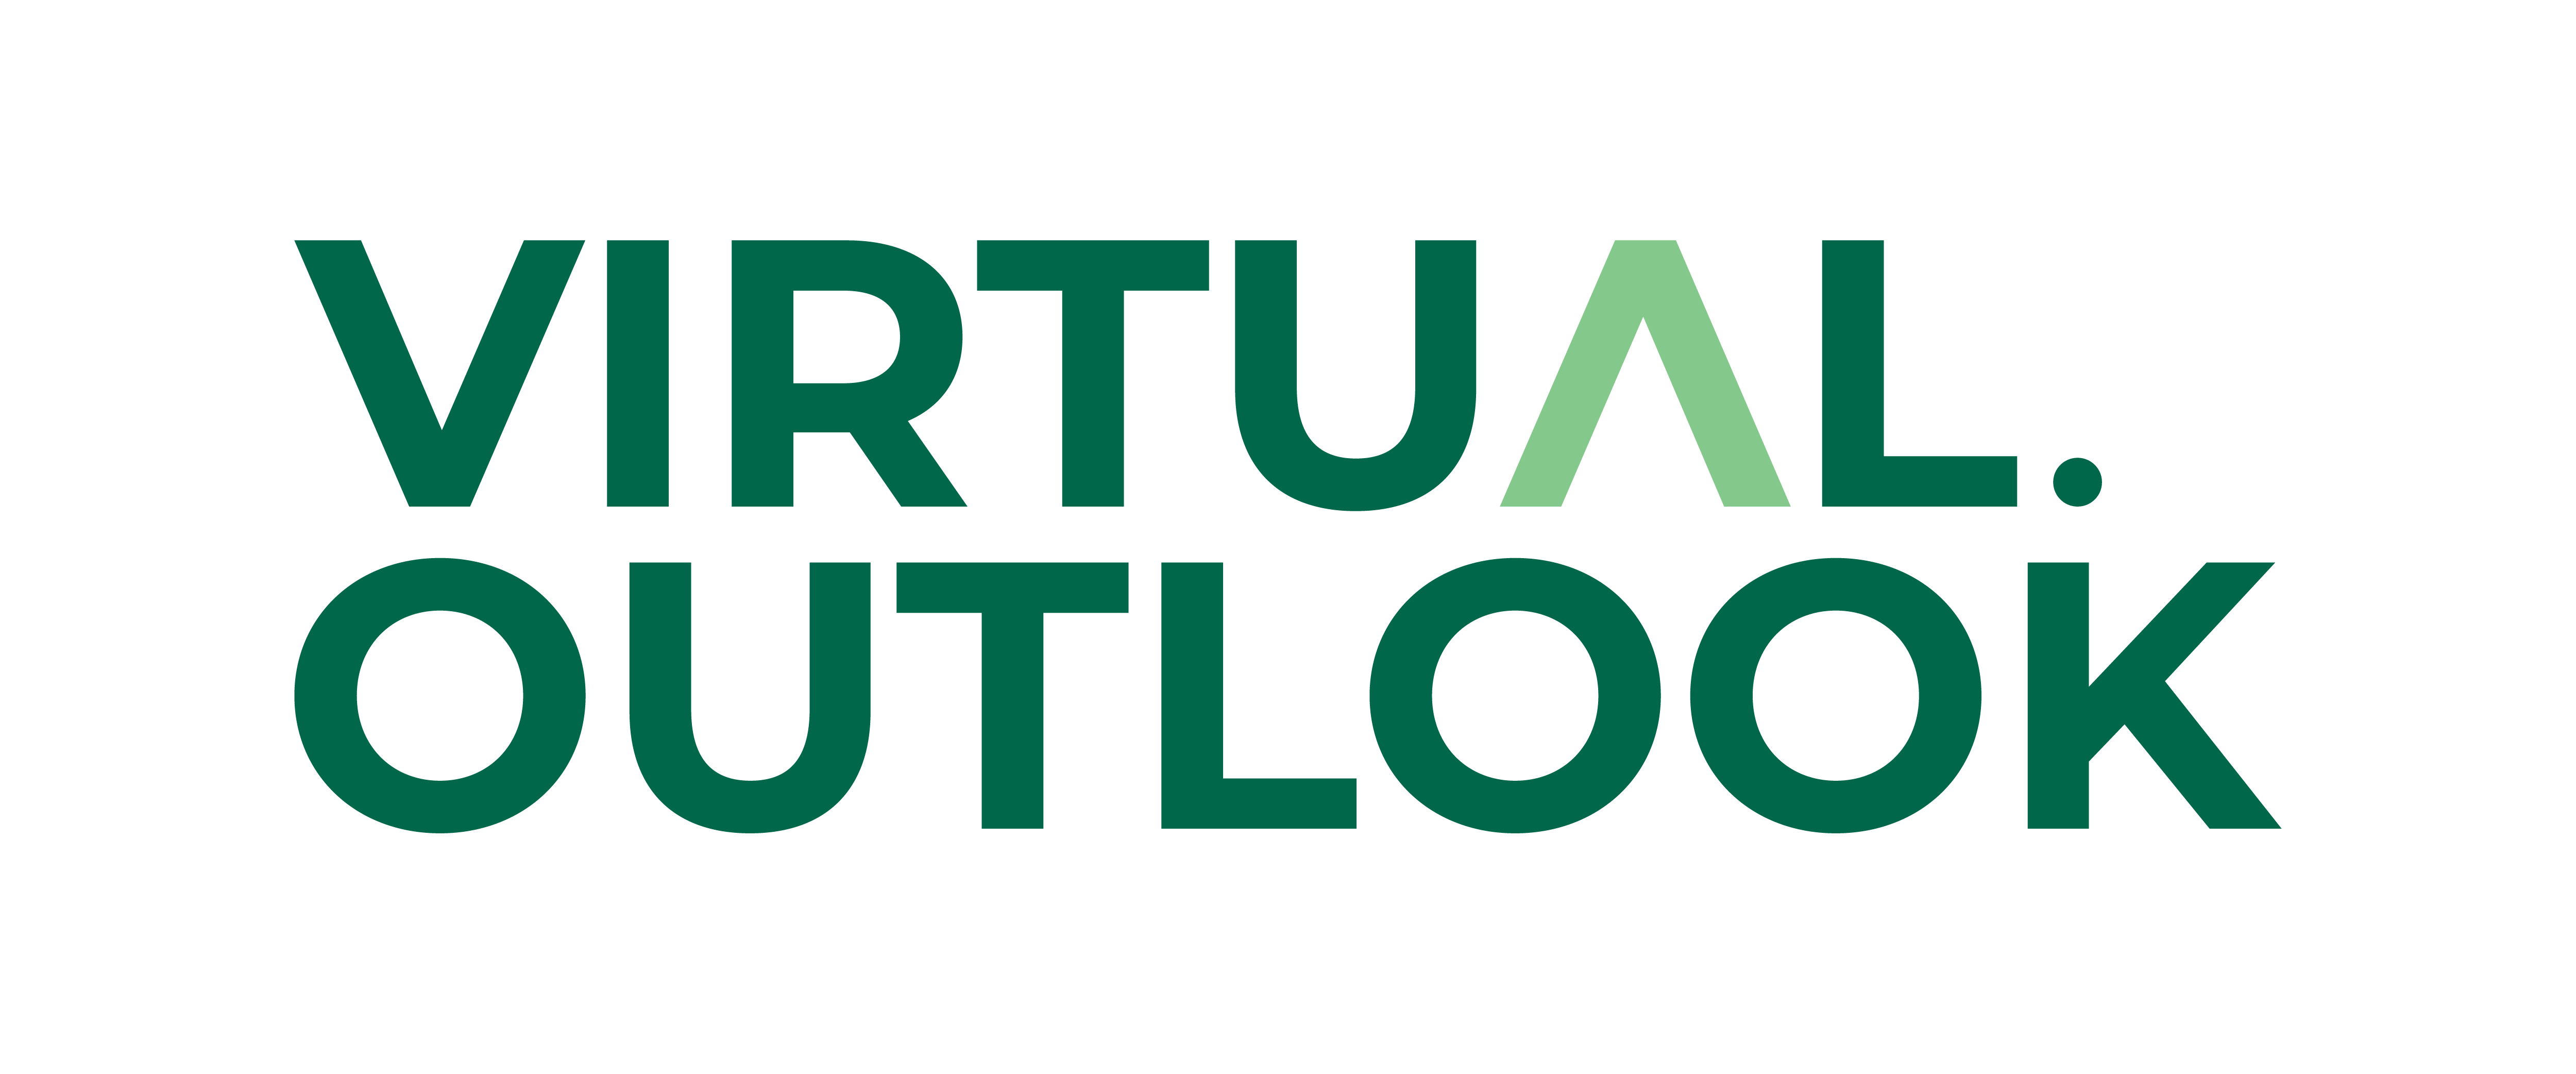 Virtual-Outlook-logo-01 (1)